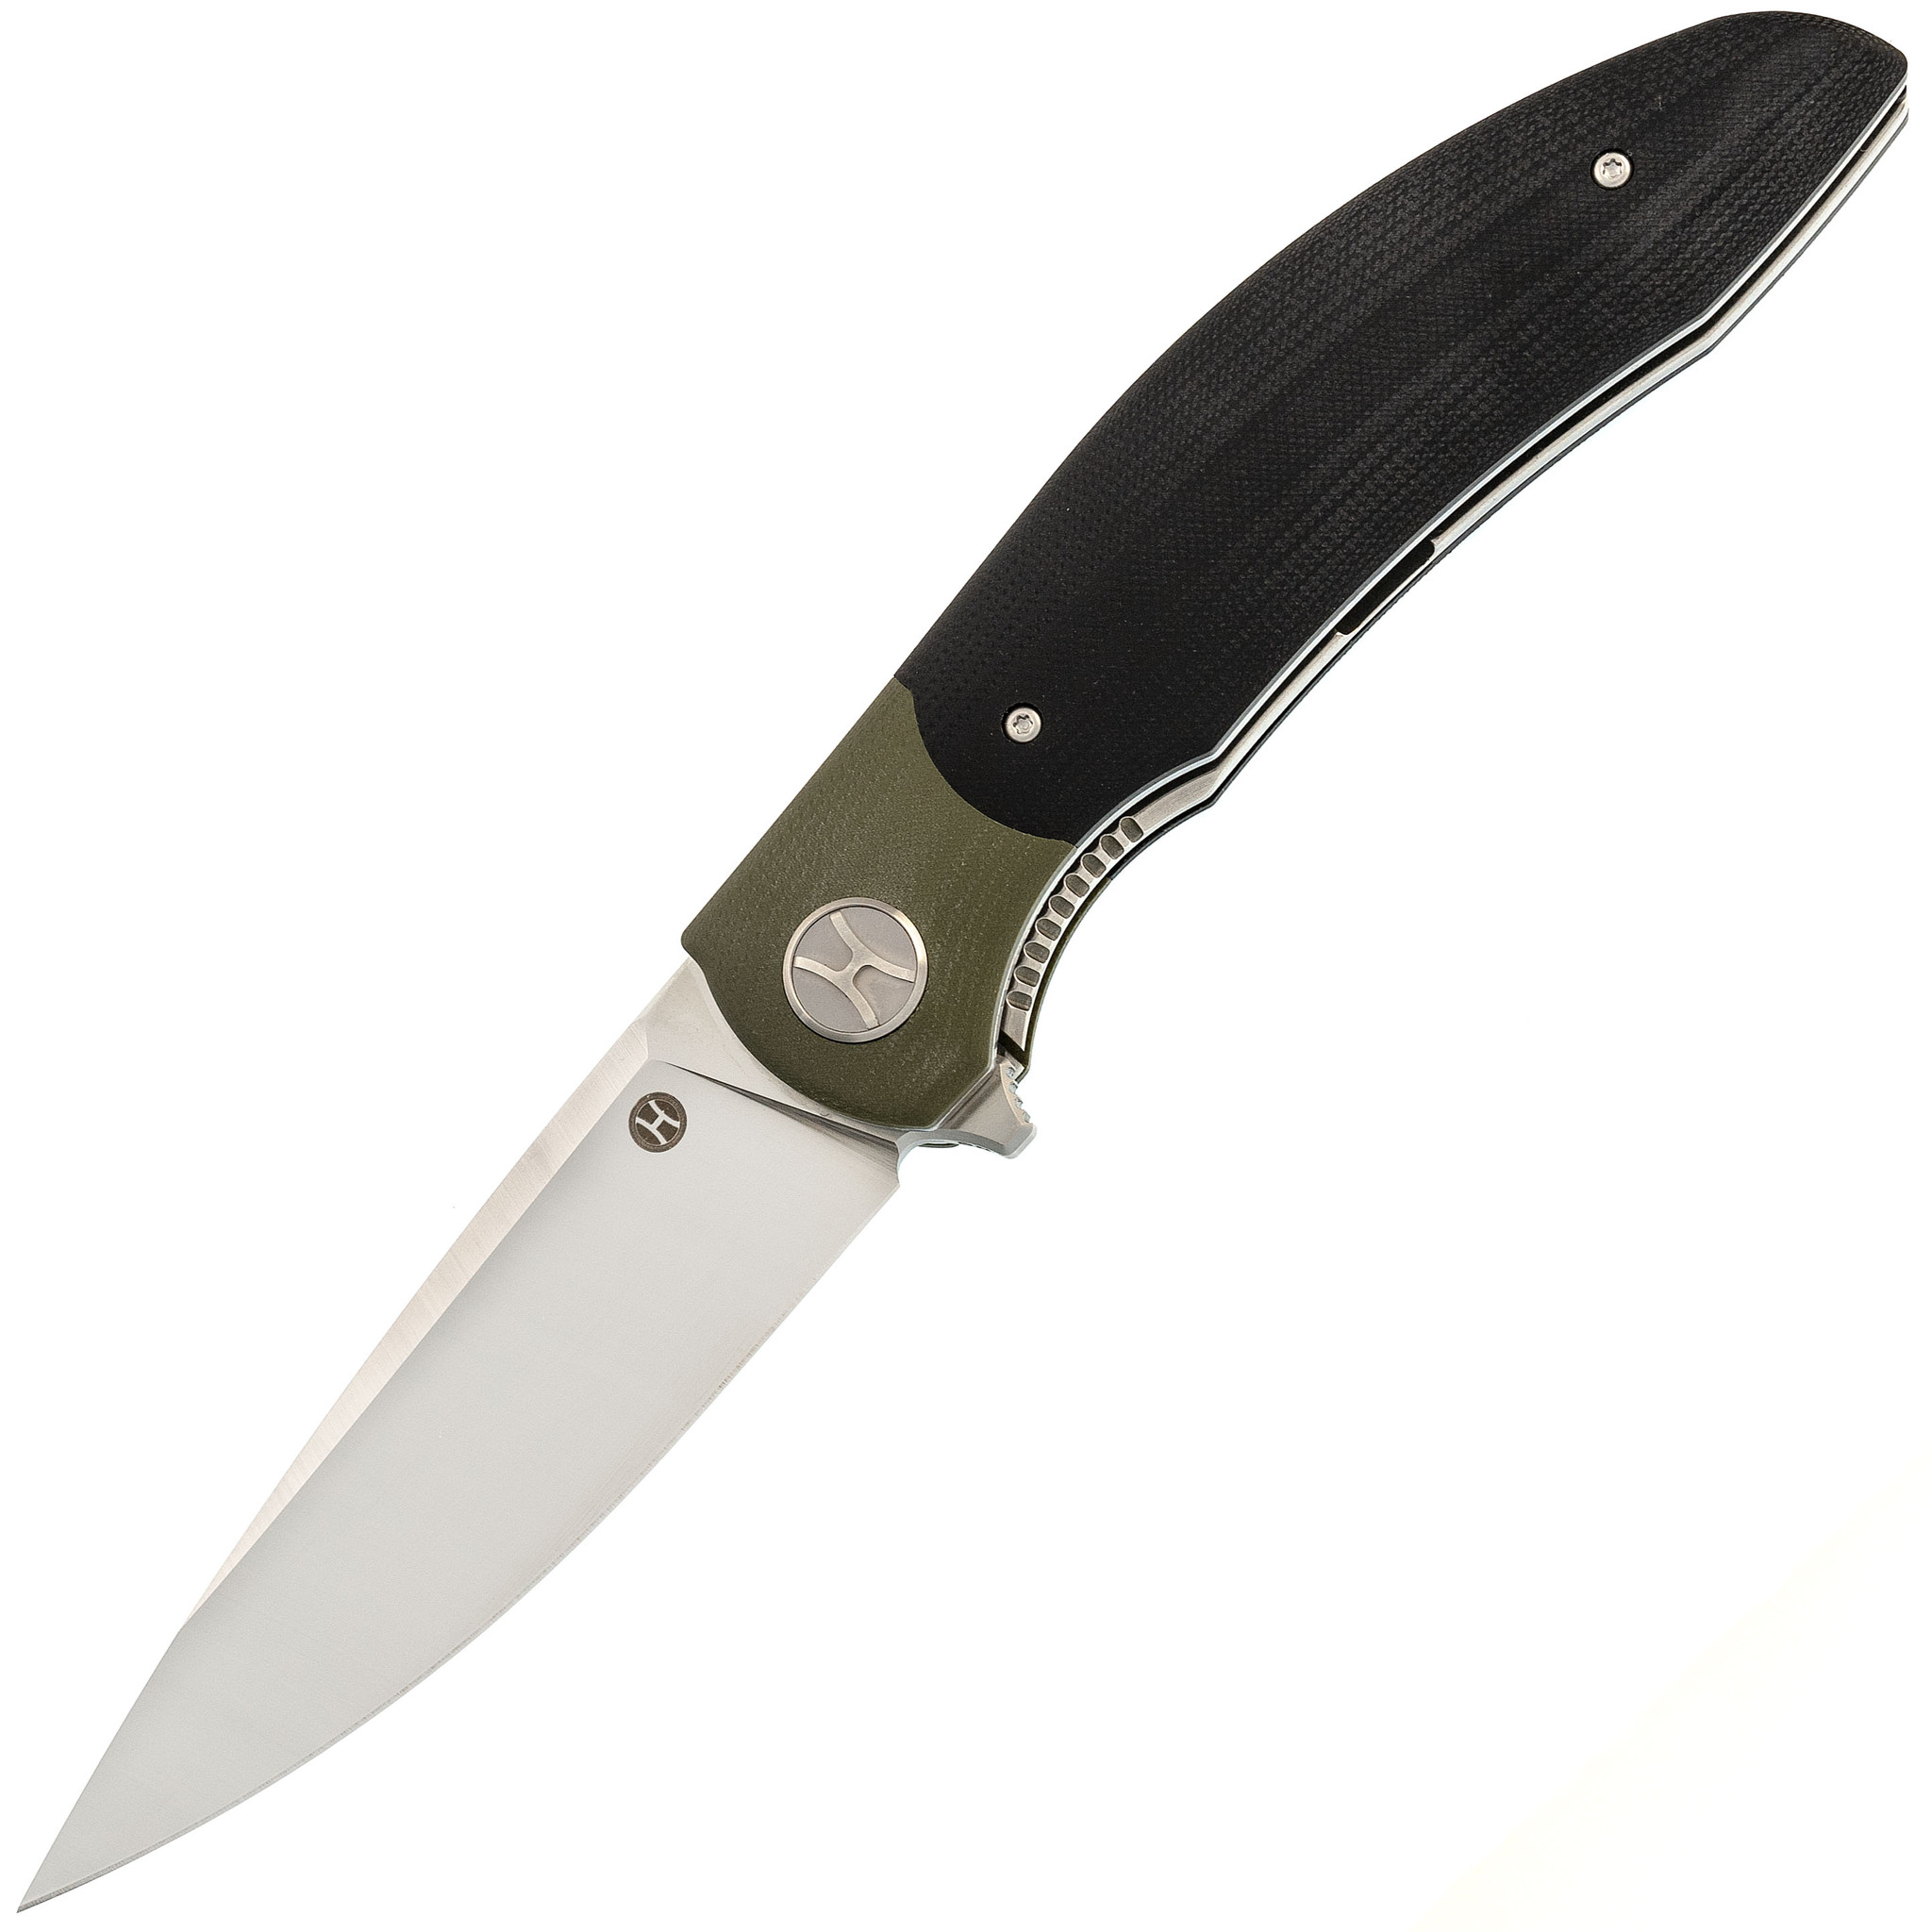 Большой складной нож Honor Tirex Black, сталь D2